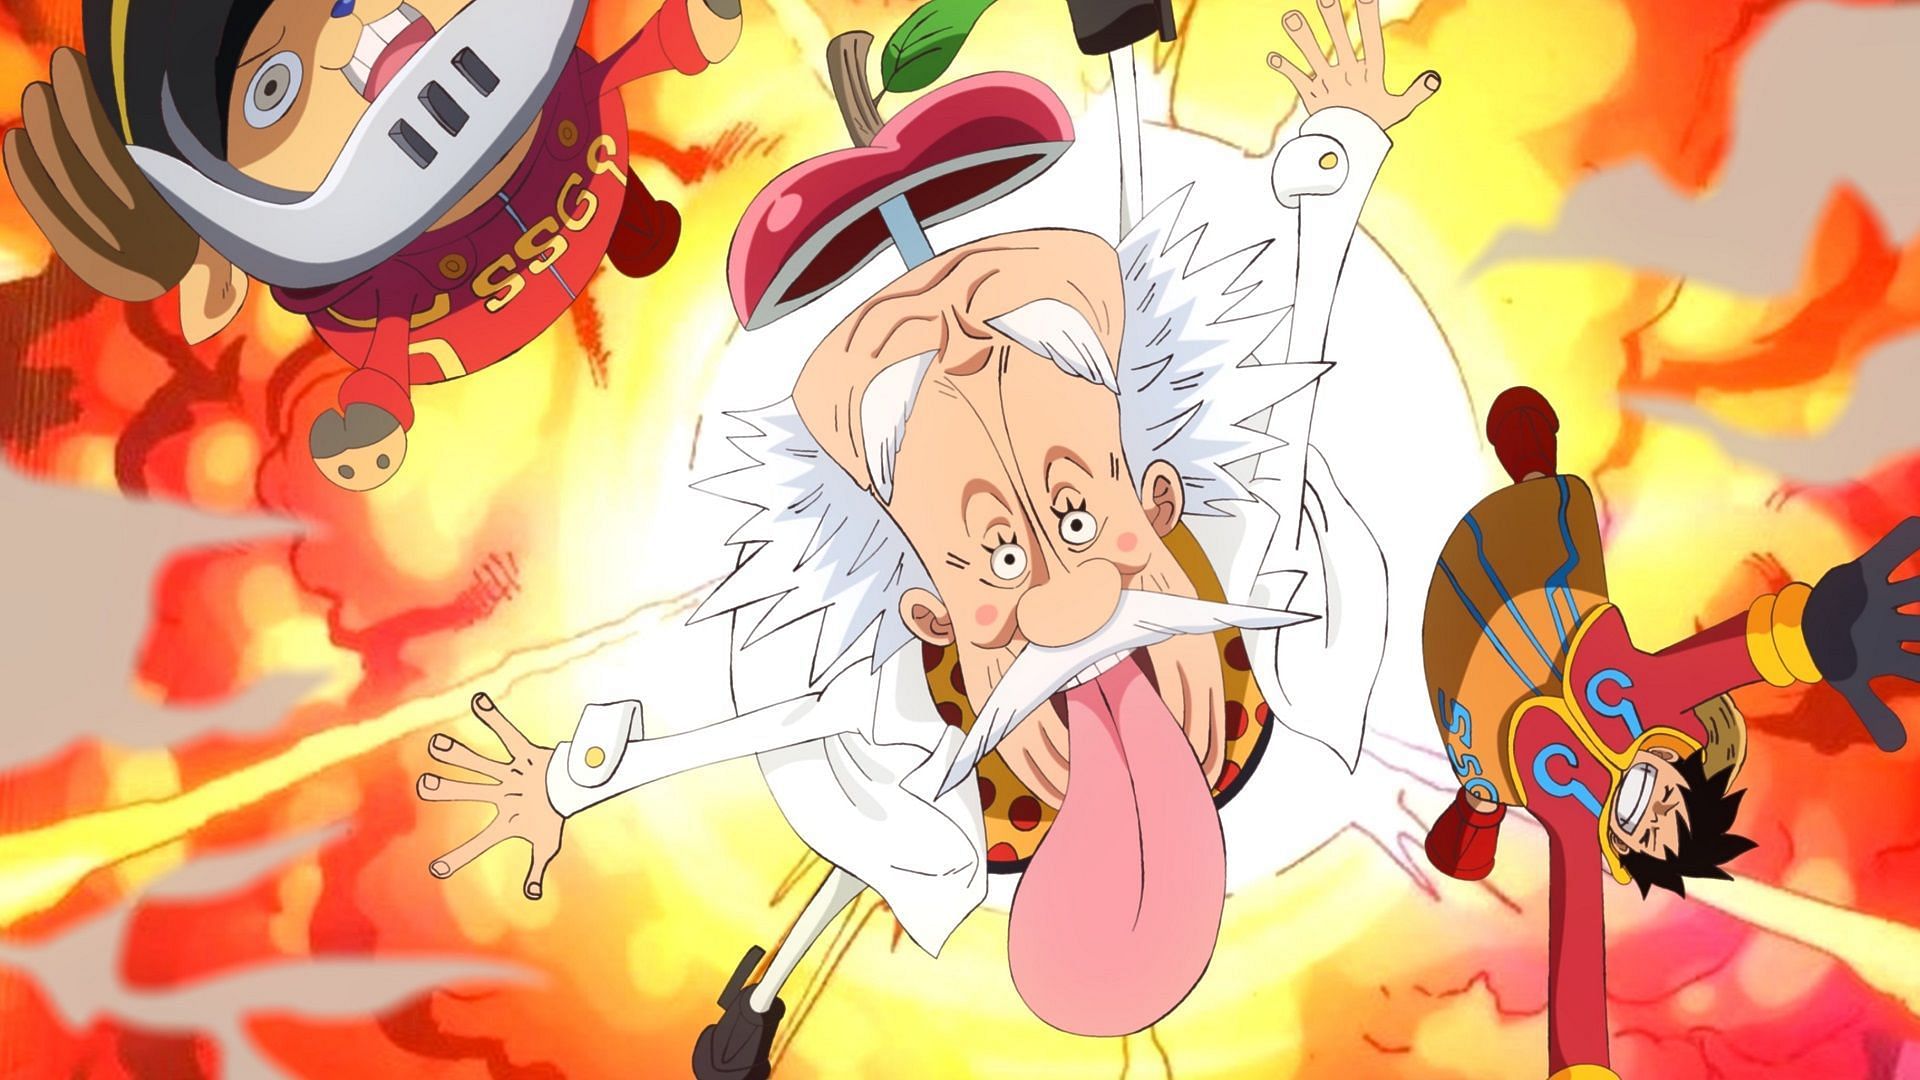 One Piece Arc List: Wano, Egghead & More